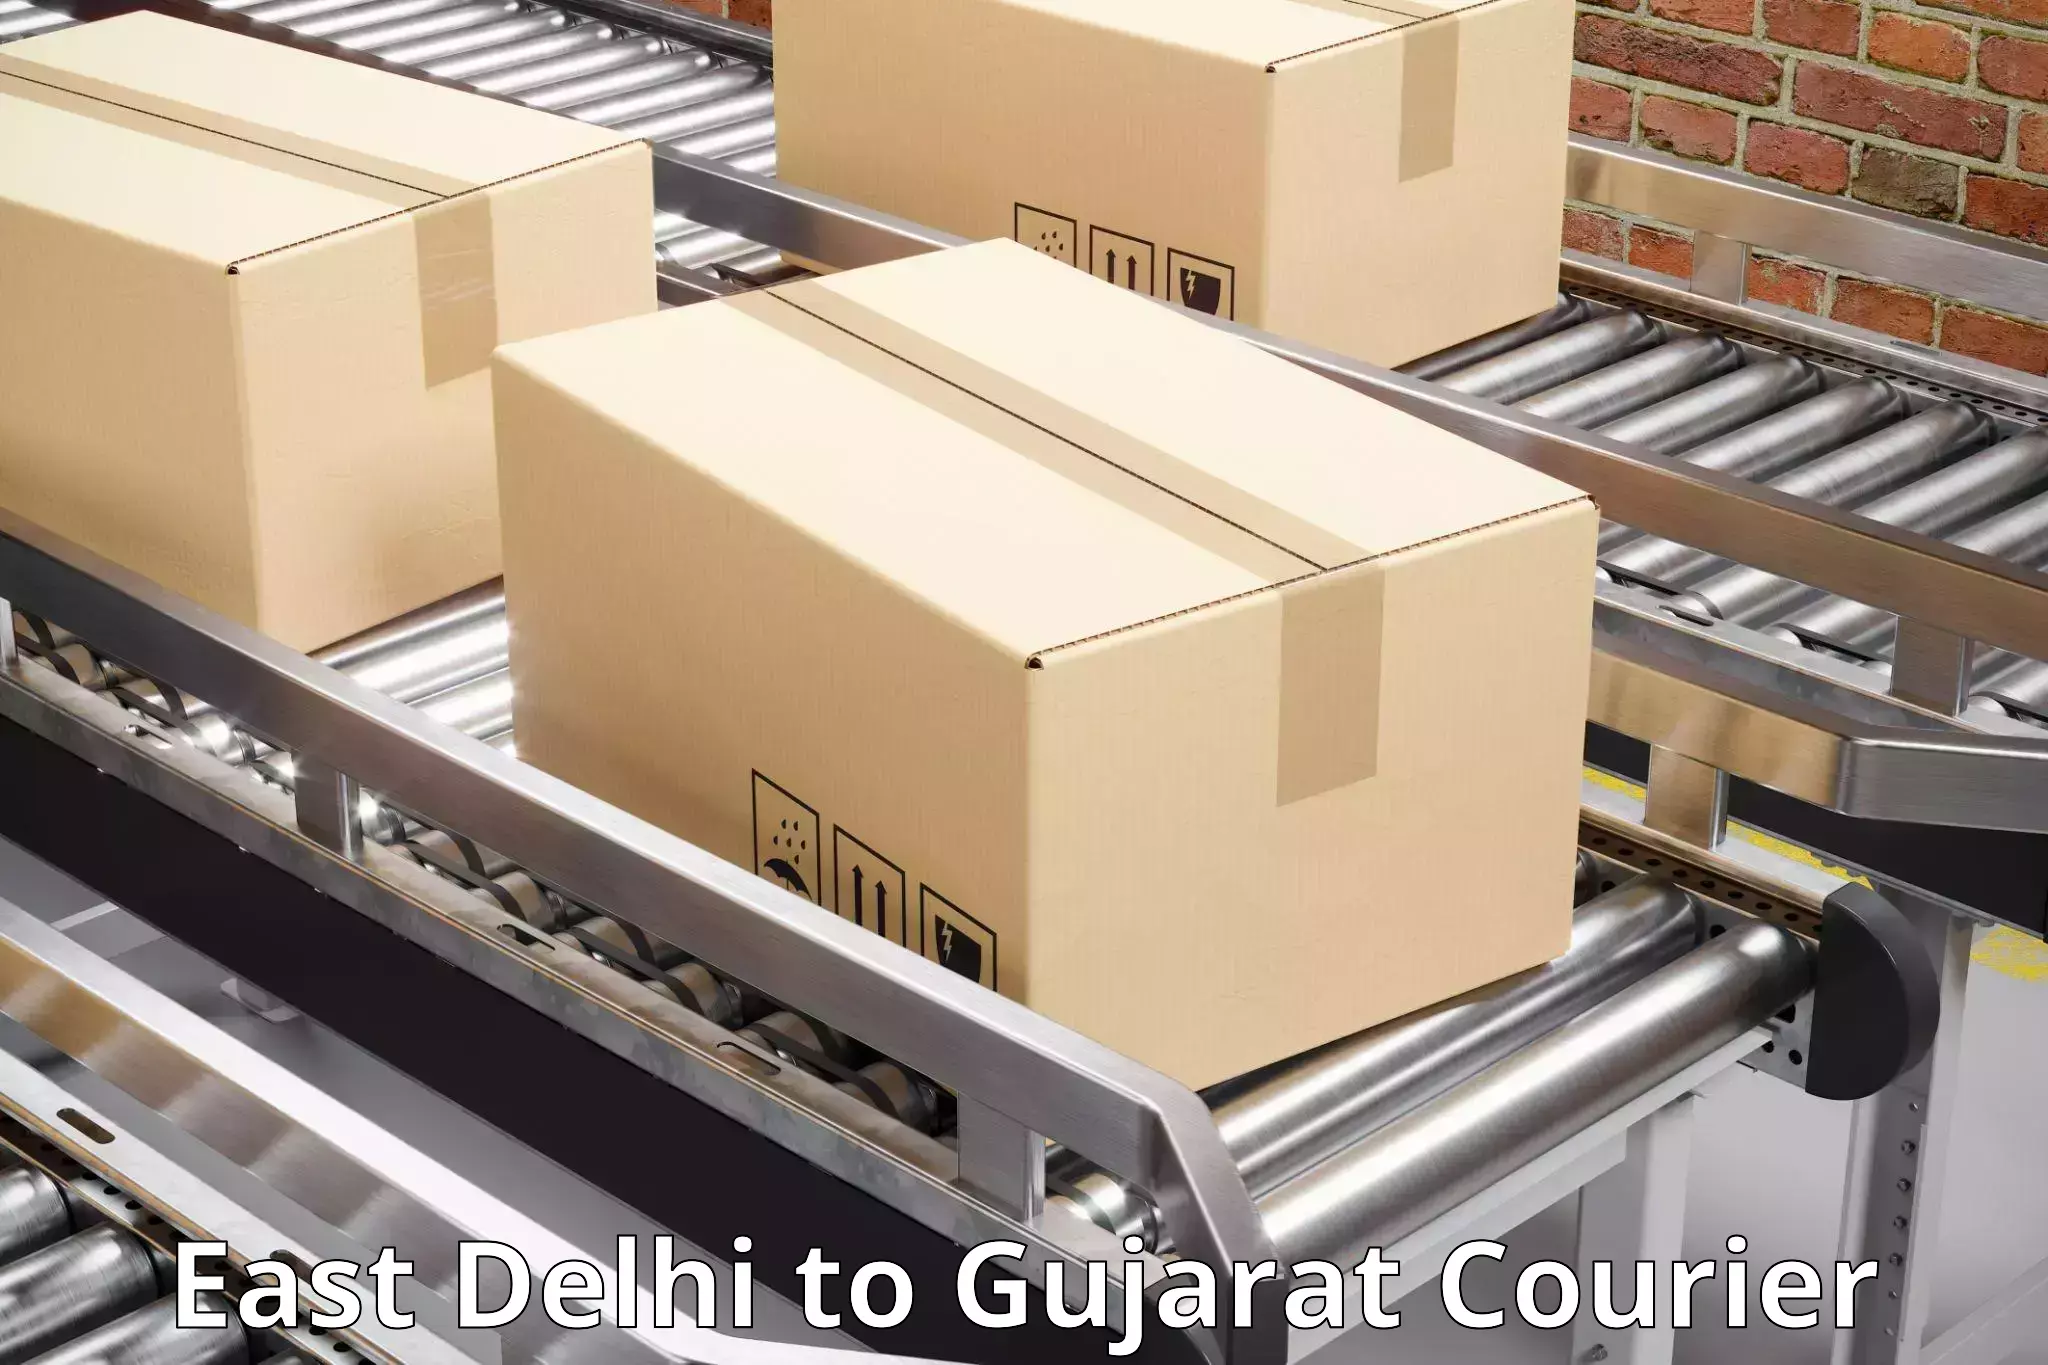 Courier app East Delhi to IIT Gandhi Nagar